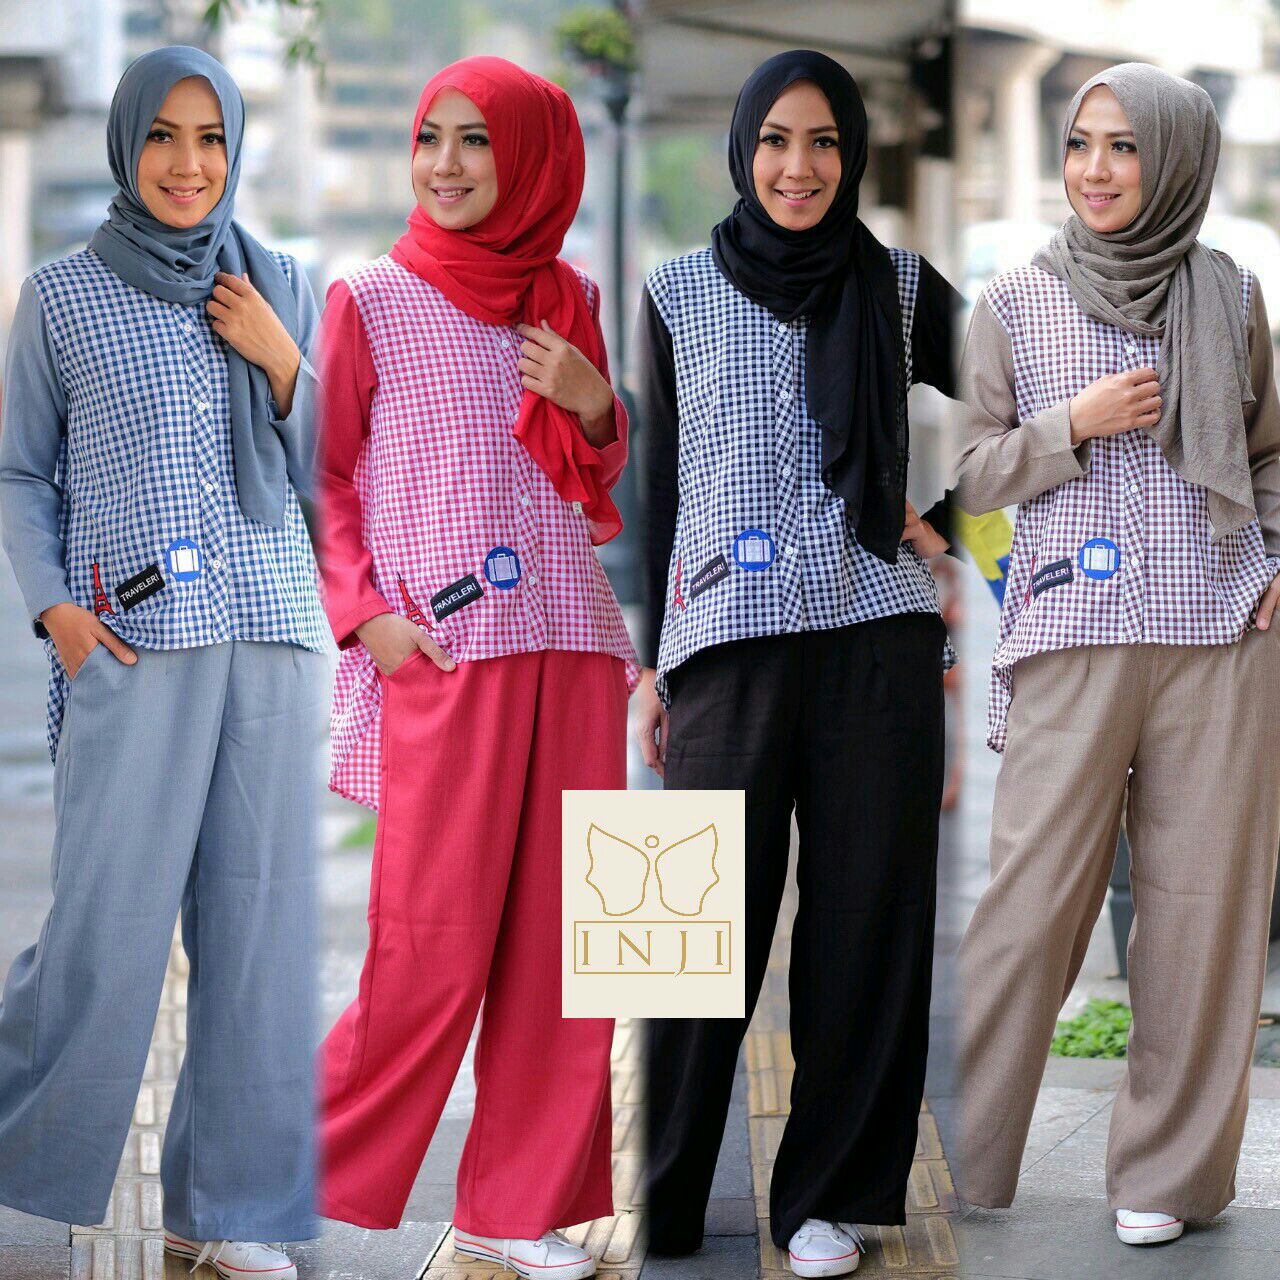  Jual Trend Baju Hijab 2019 Ravelli Set By Inji